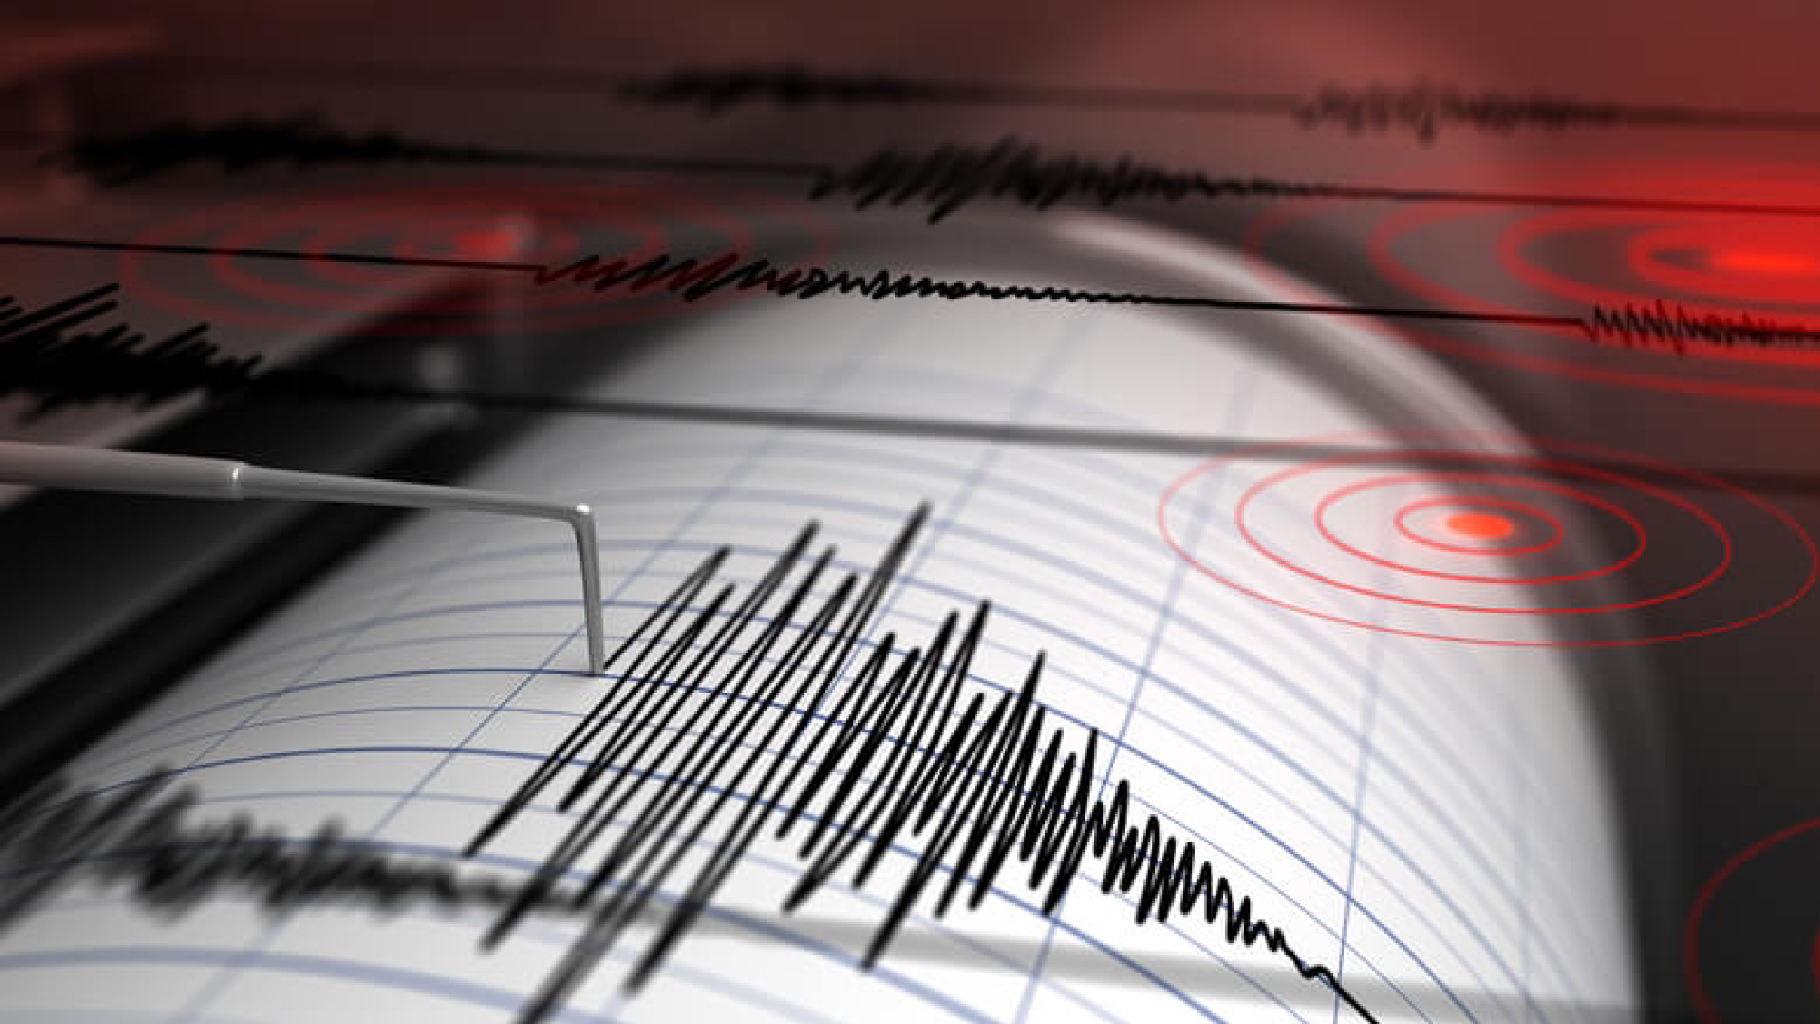 Terremoto nella notte tra Parma e Reggio Emilia: scossa di magnitudo 3.0